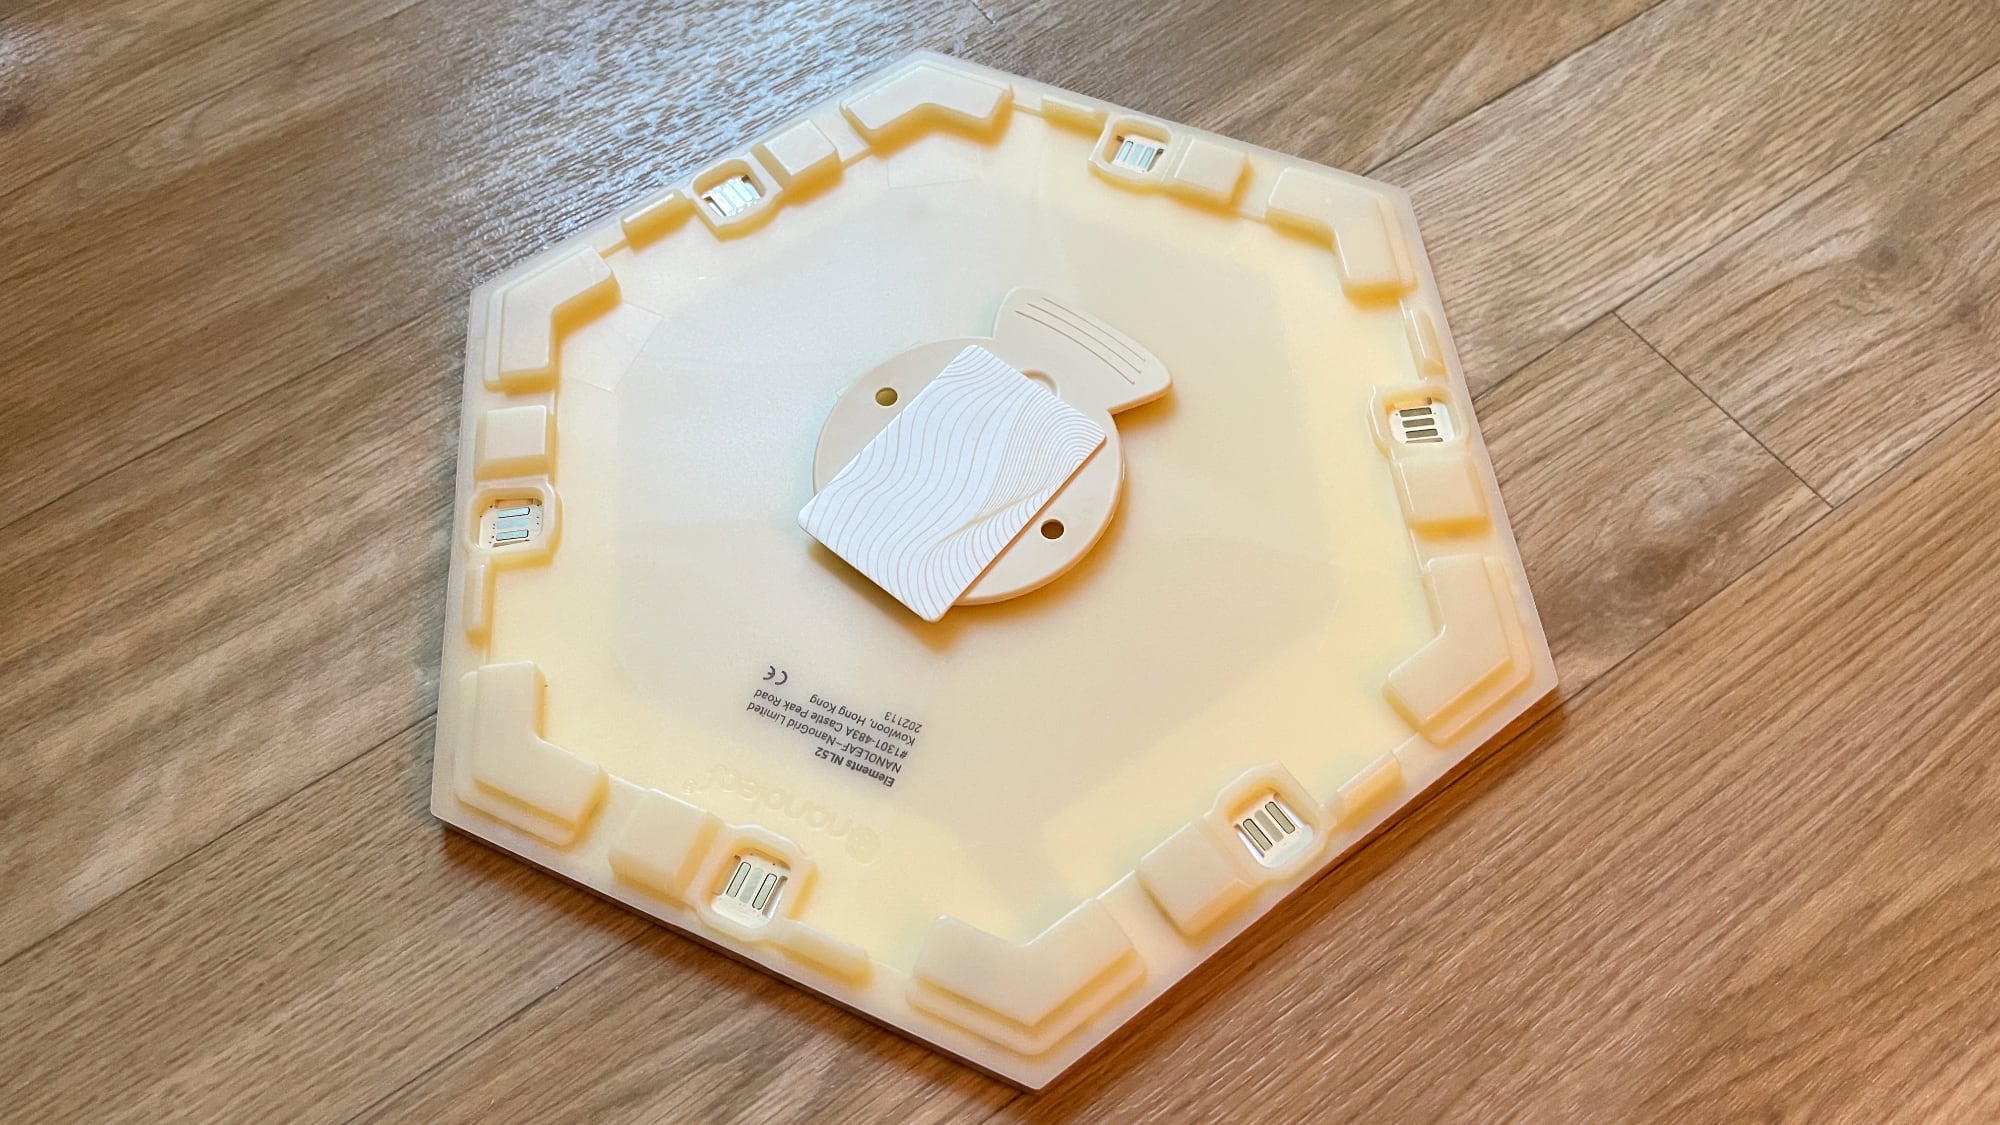 Hexagon Lamp - Product Design - McNeel Forum